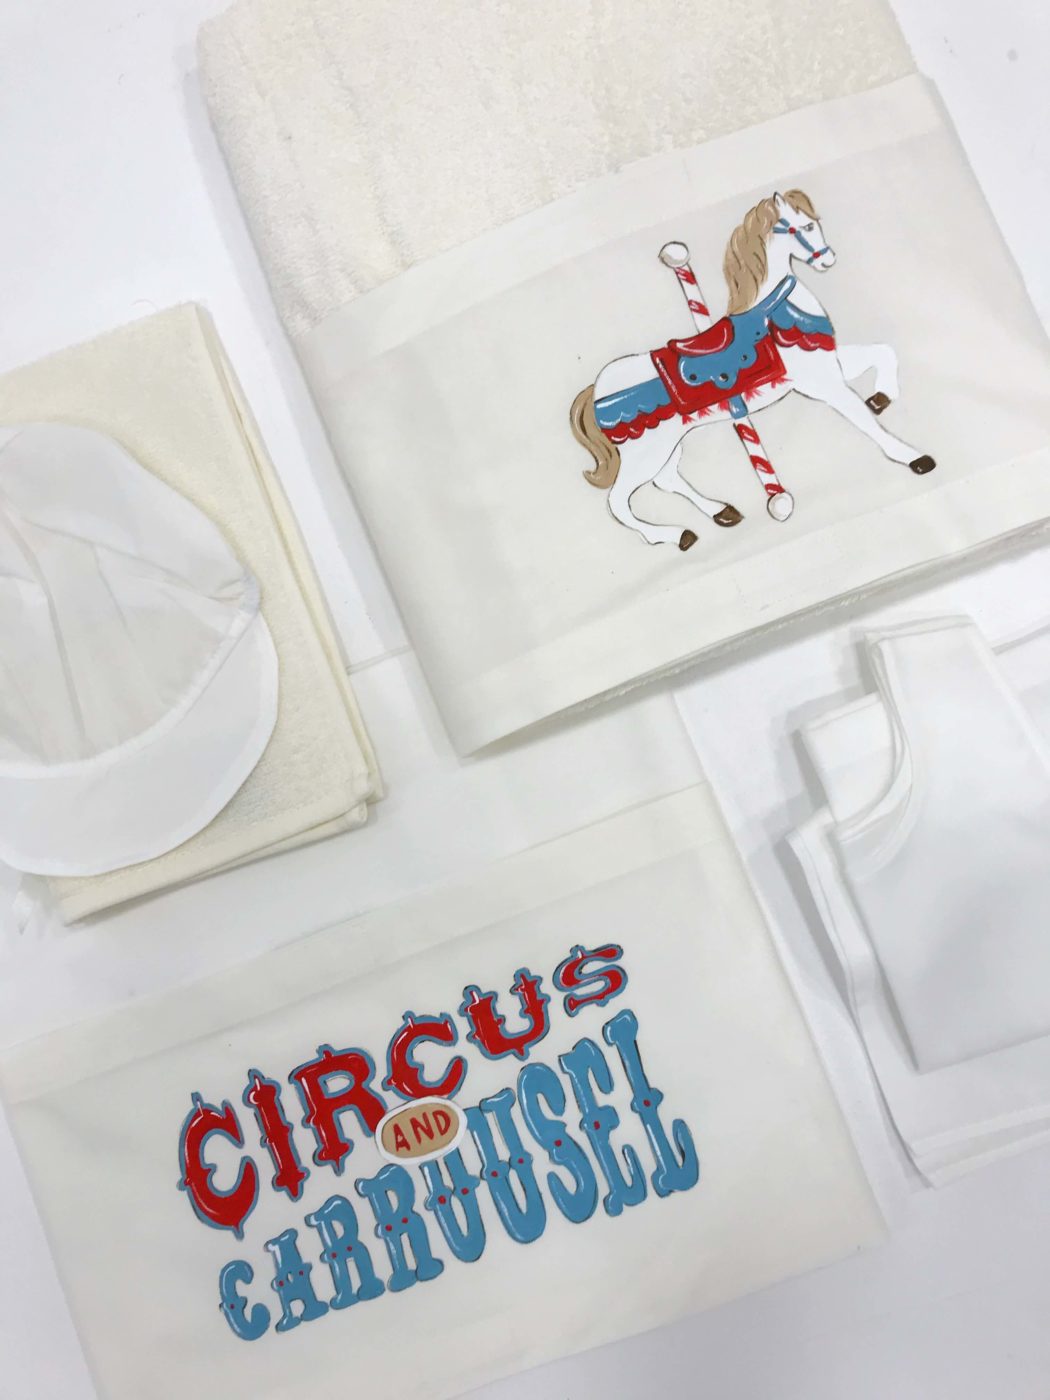 Circus carousel 2 1